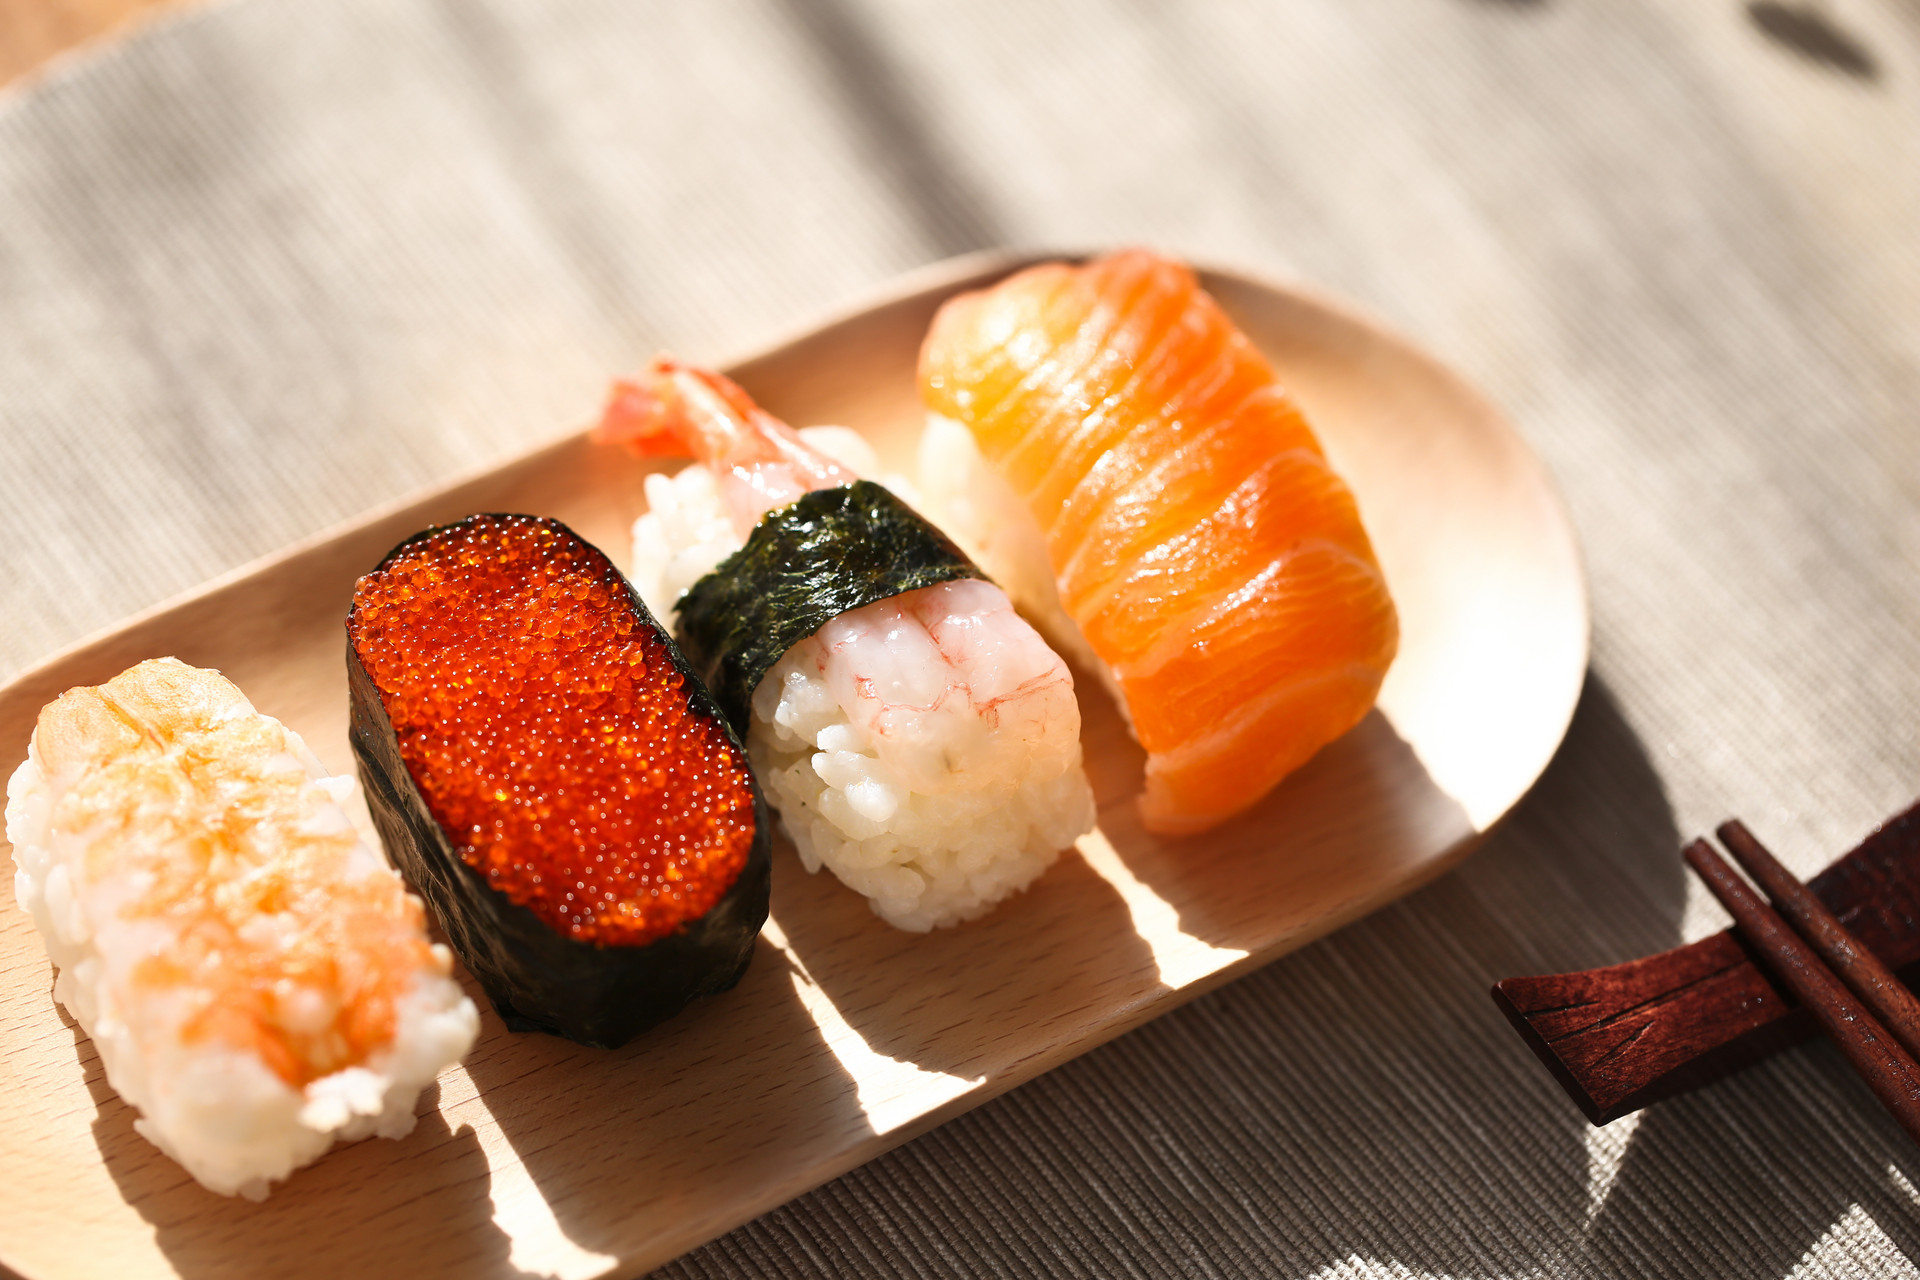 哪些人不适合吃寿司 这五类人群应少食